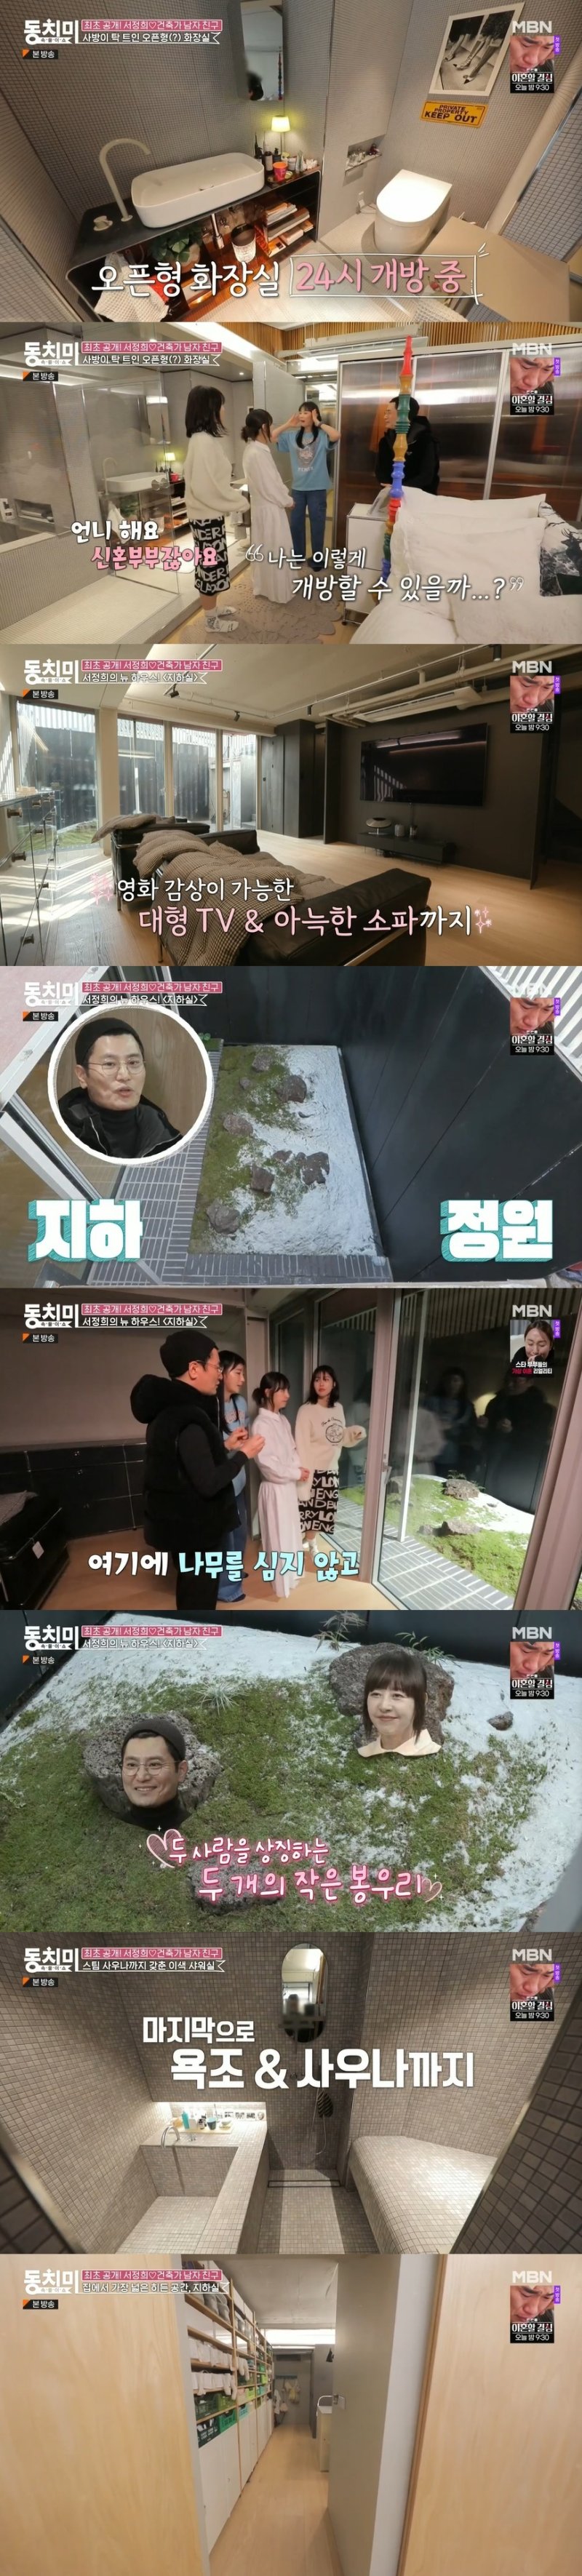 서정희, '6세 연하 건축가 남친' 김태현과 함께 만든 특별한 집 [RE:TV]